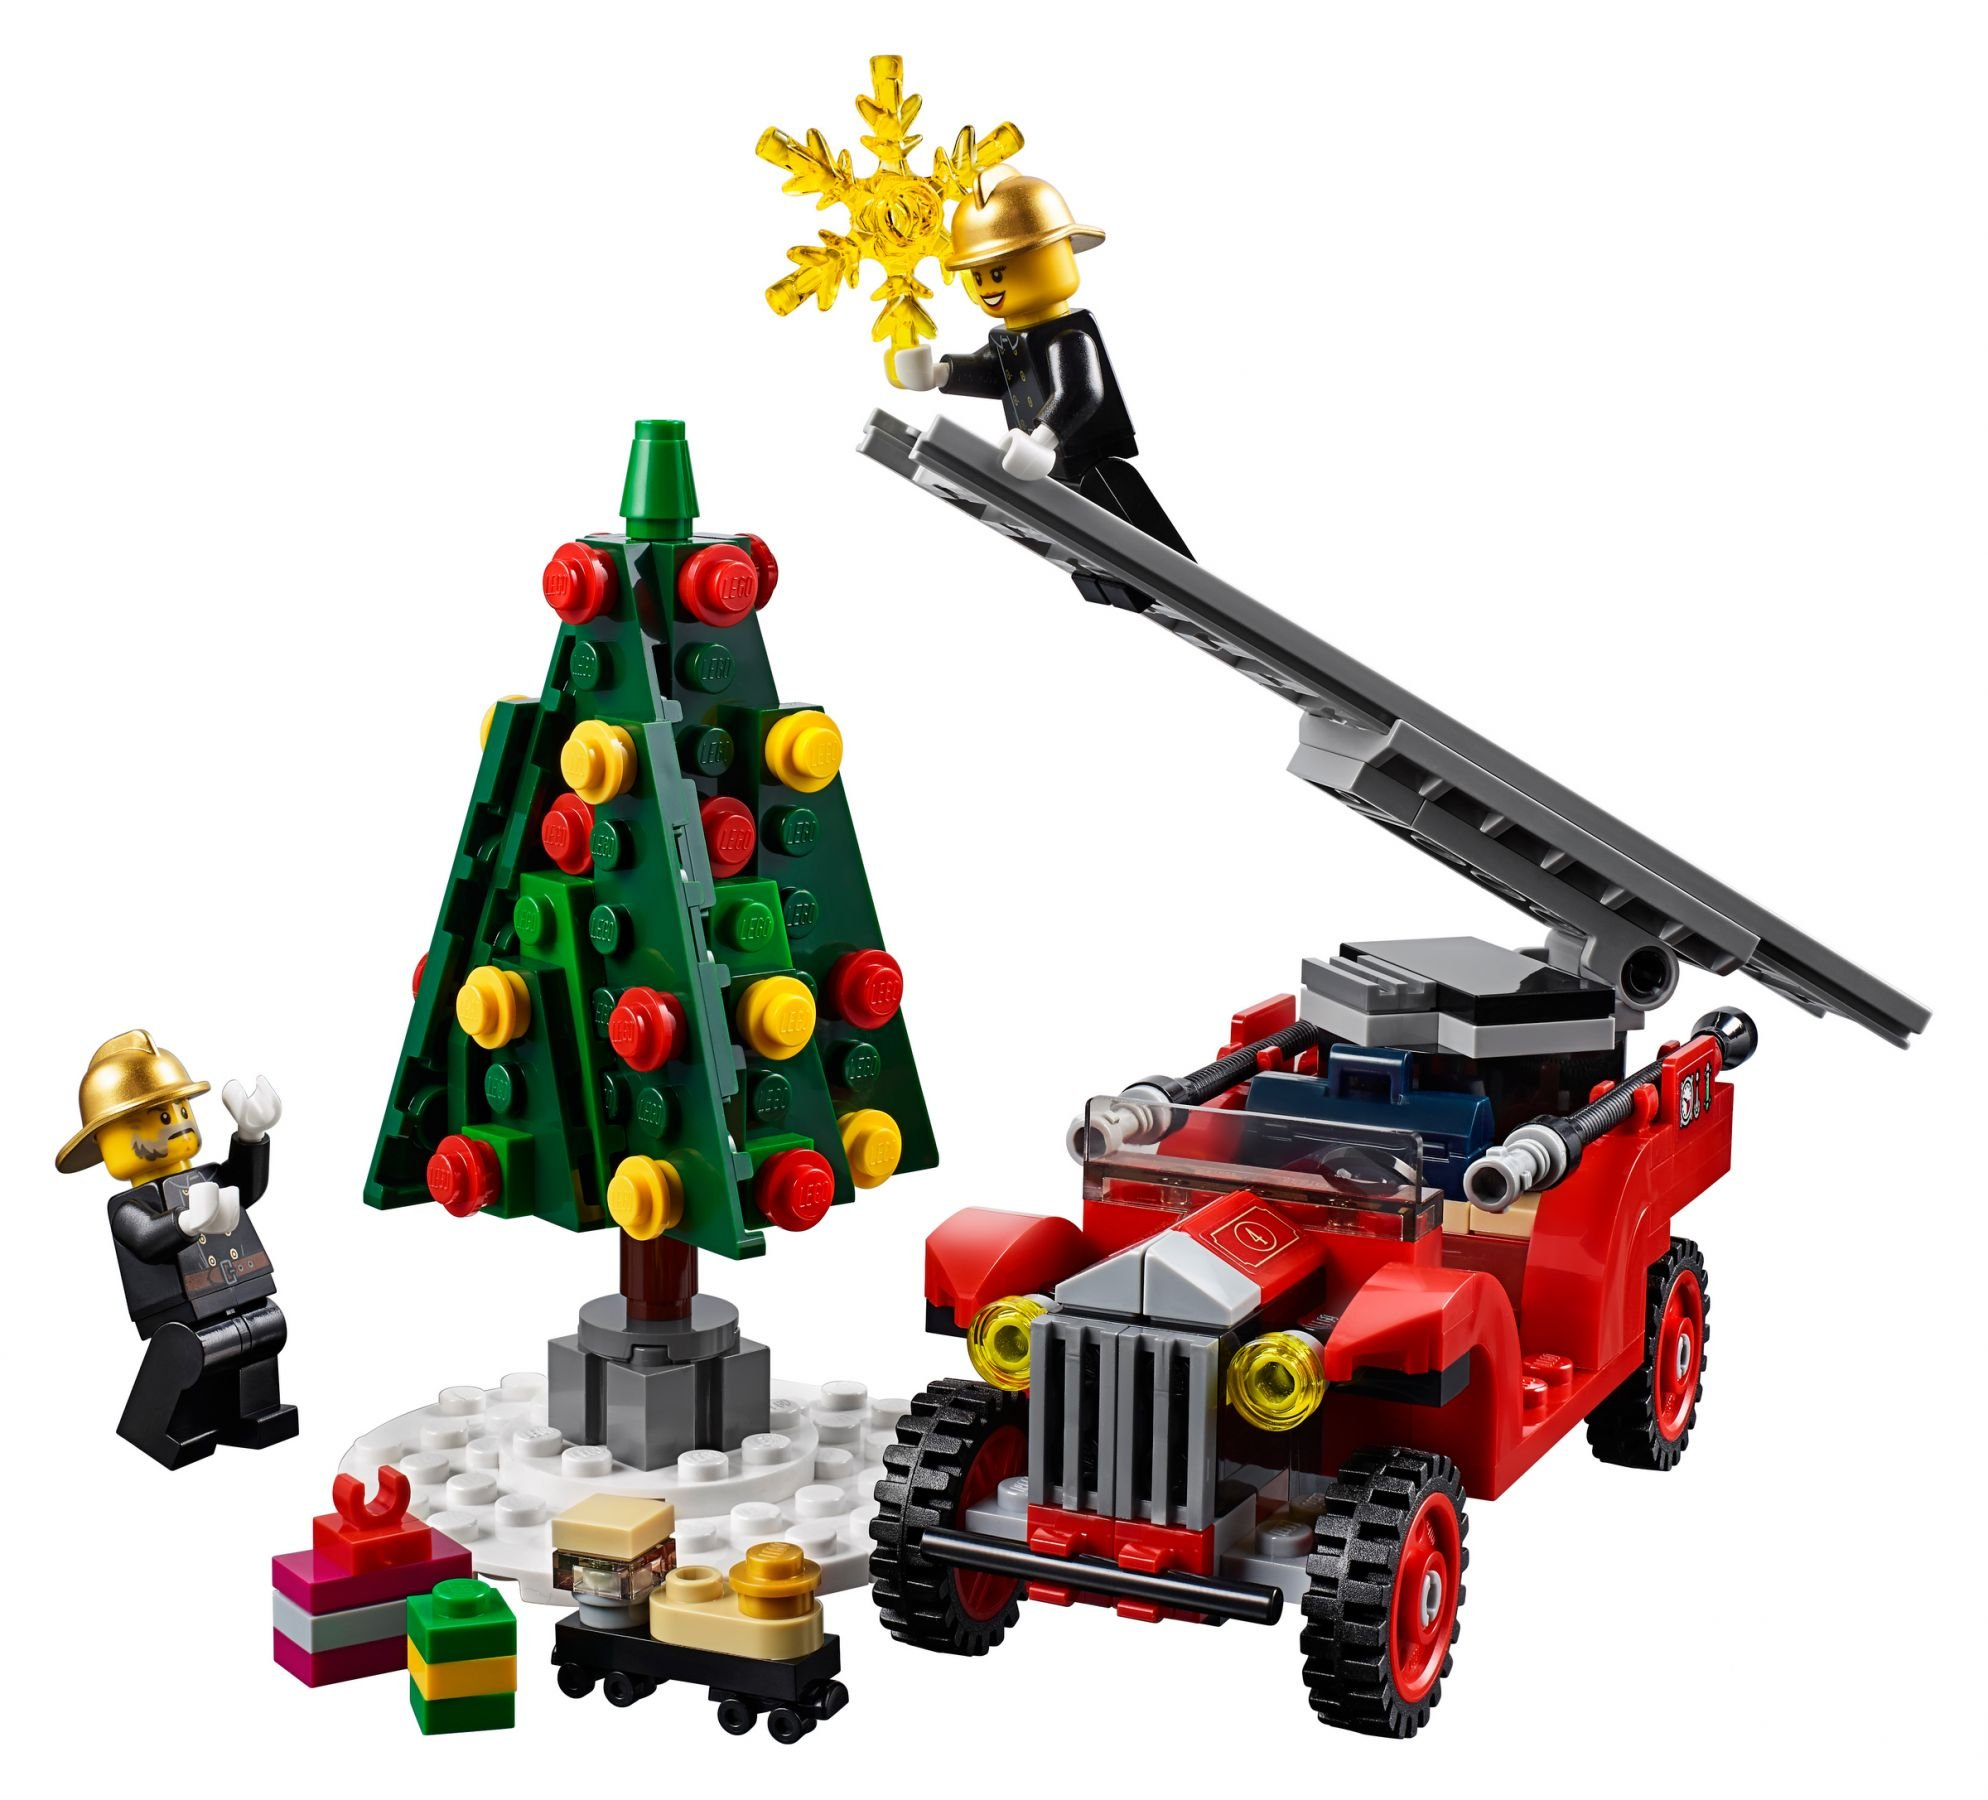 LEGO Creator Expert 10263 Bausatz Winterliche Feuerwehrstation